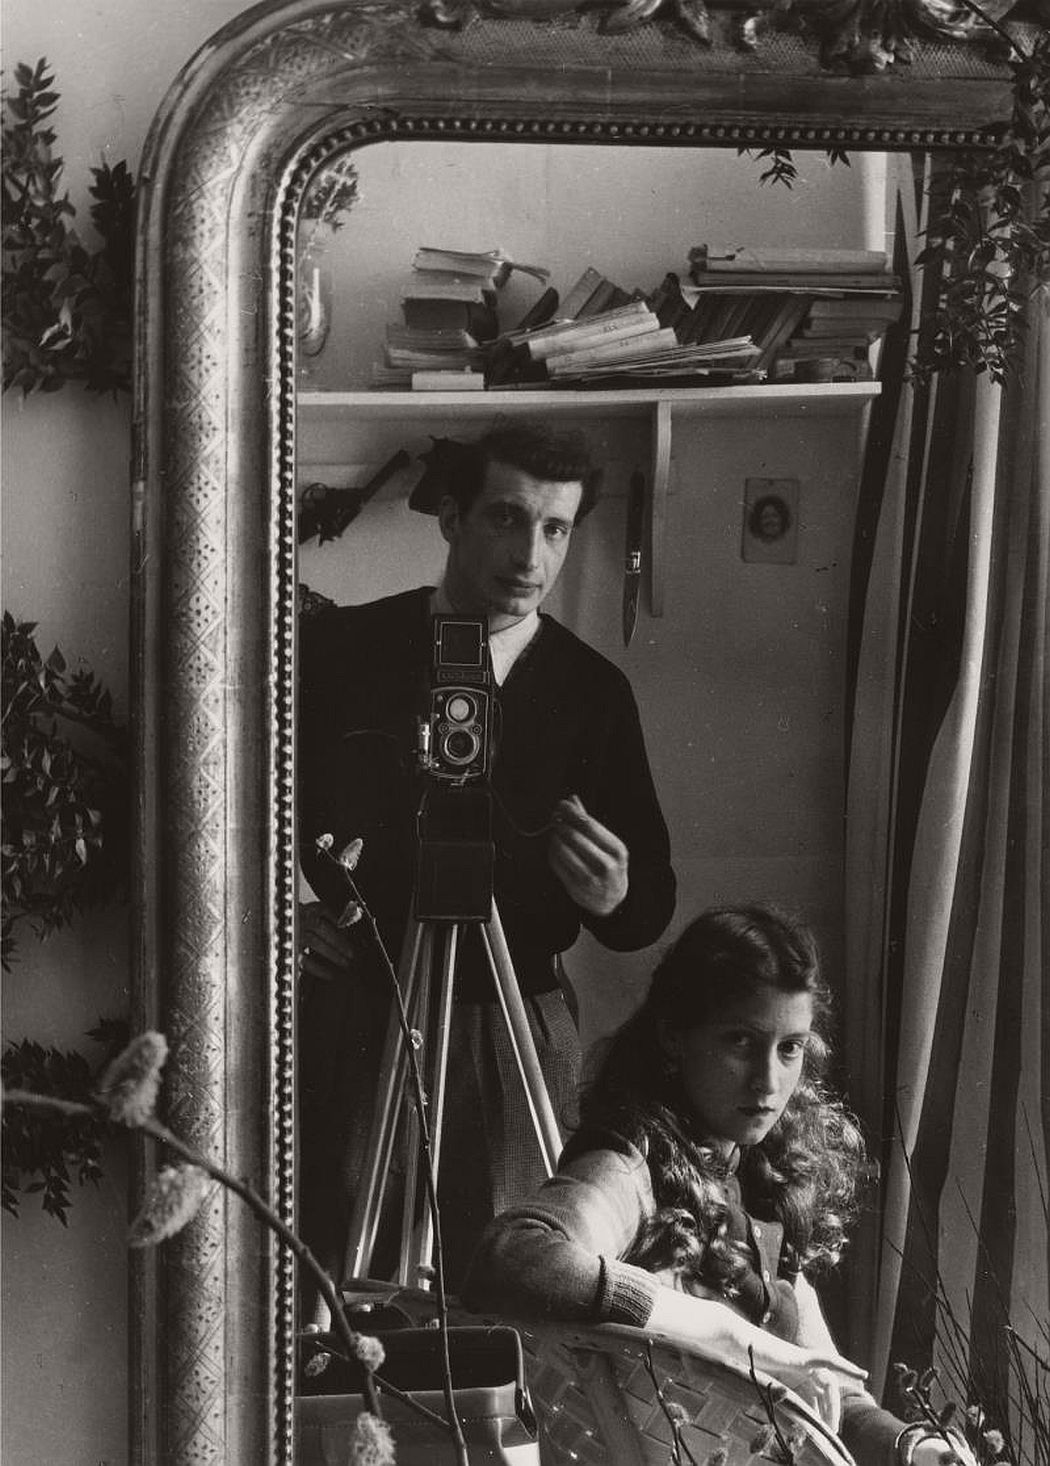 self portrait mirror boubat edouard portraits famous paris photographers photographer 1951 french lella autoportrait avec monovisions artists close artnet